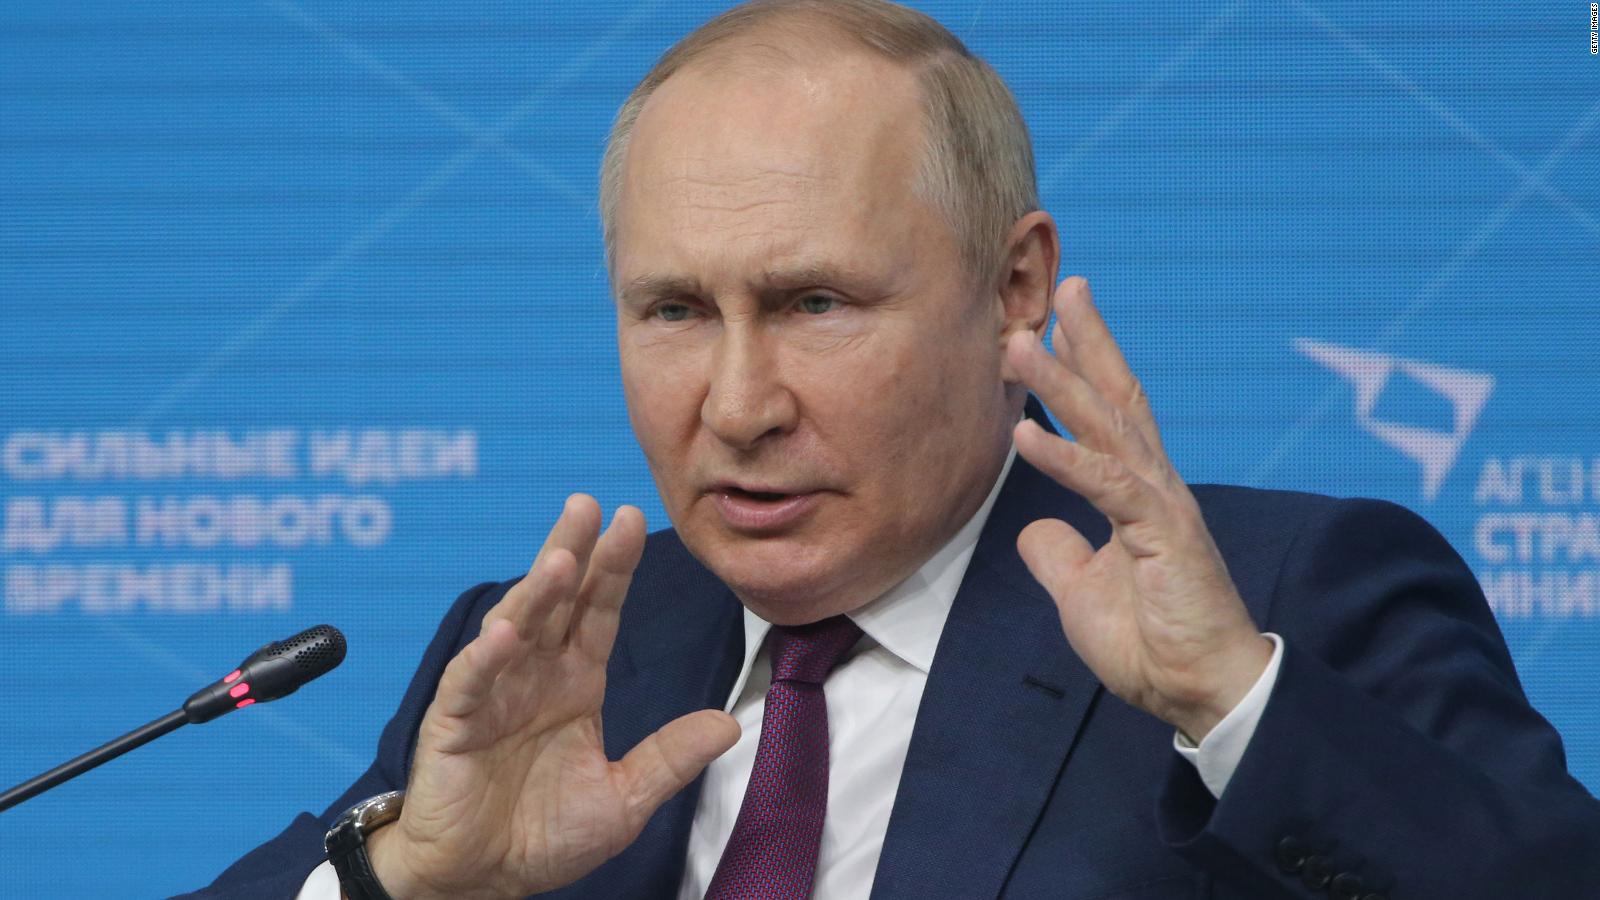 Cosa sappiamo veramente della salute di Vladimir Putin?  (analisi)